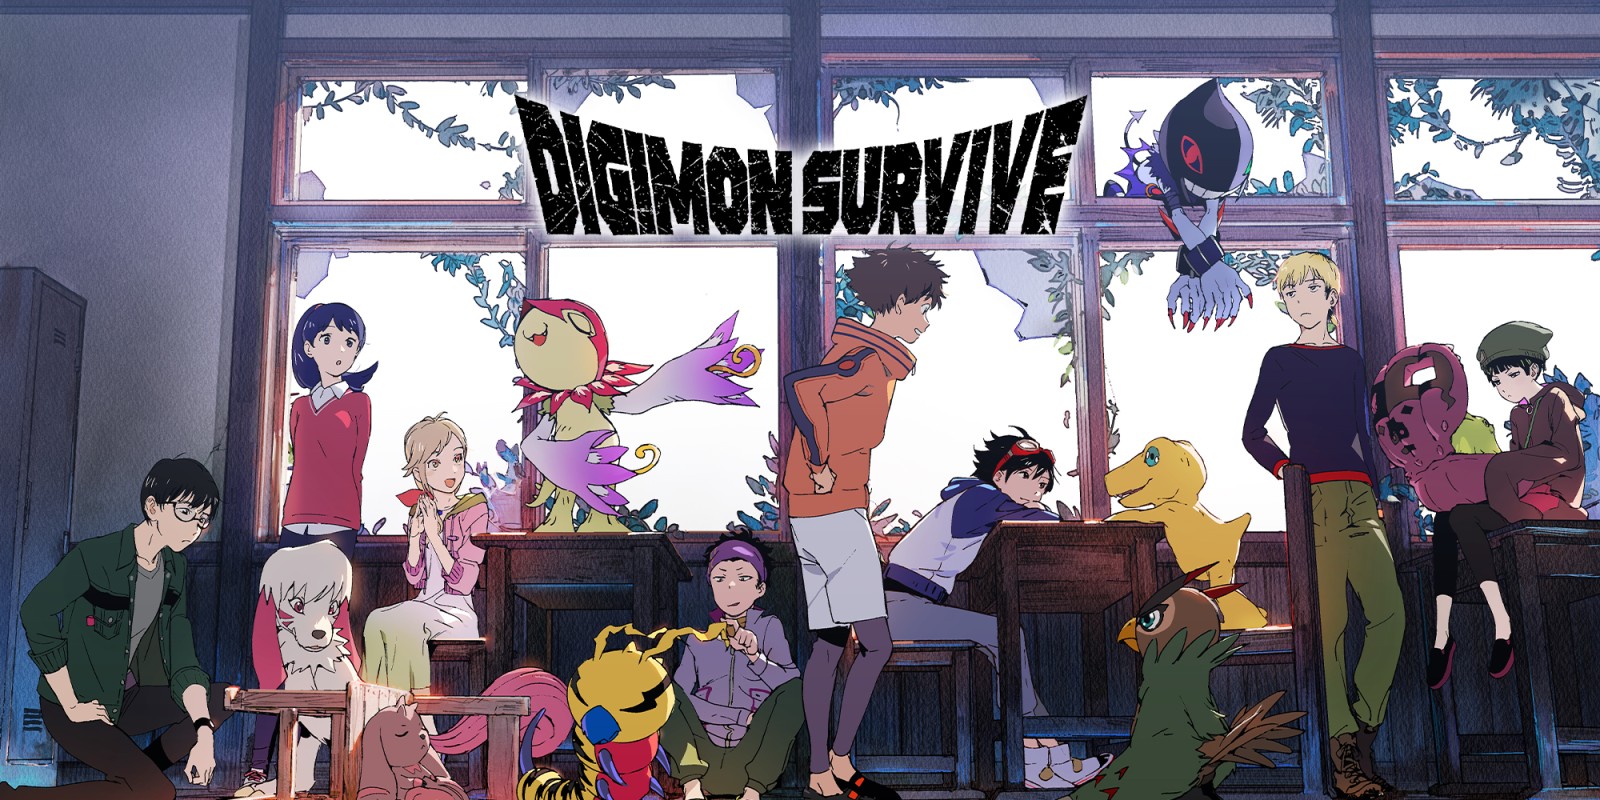 Digimon Survive review